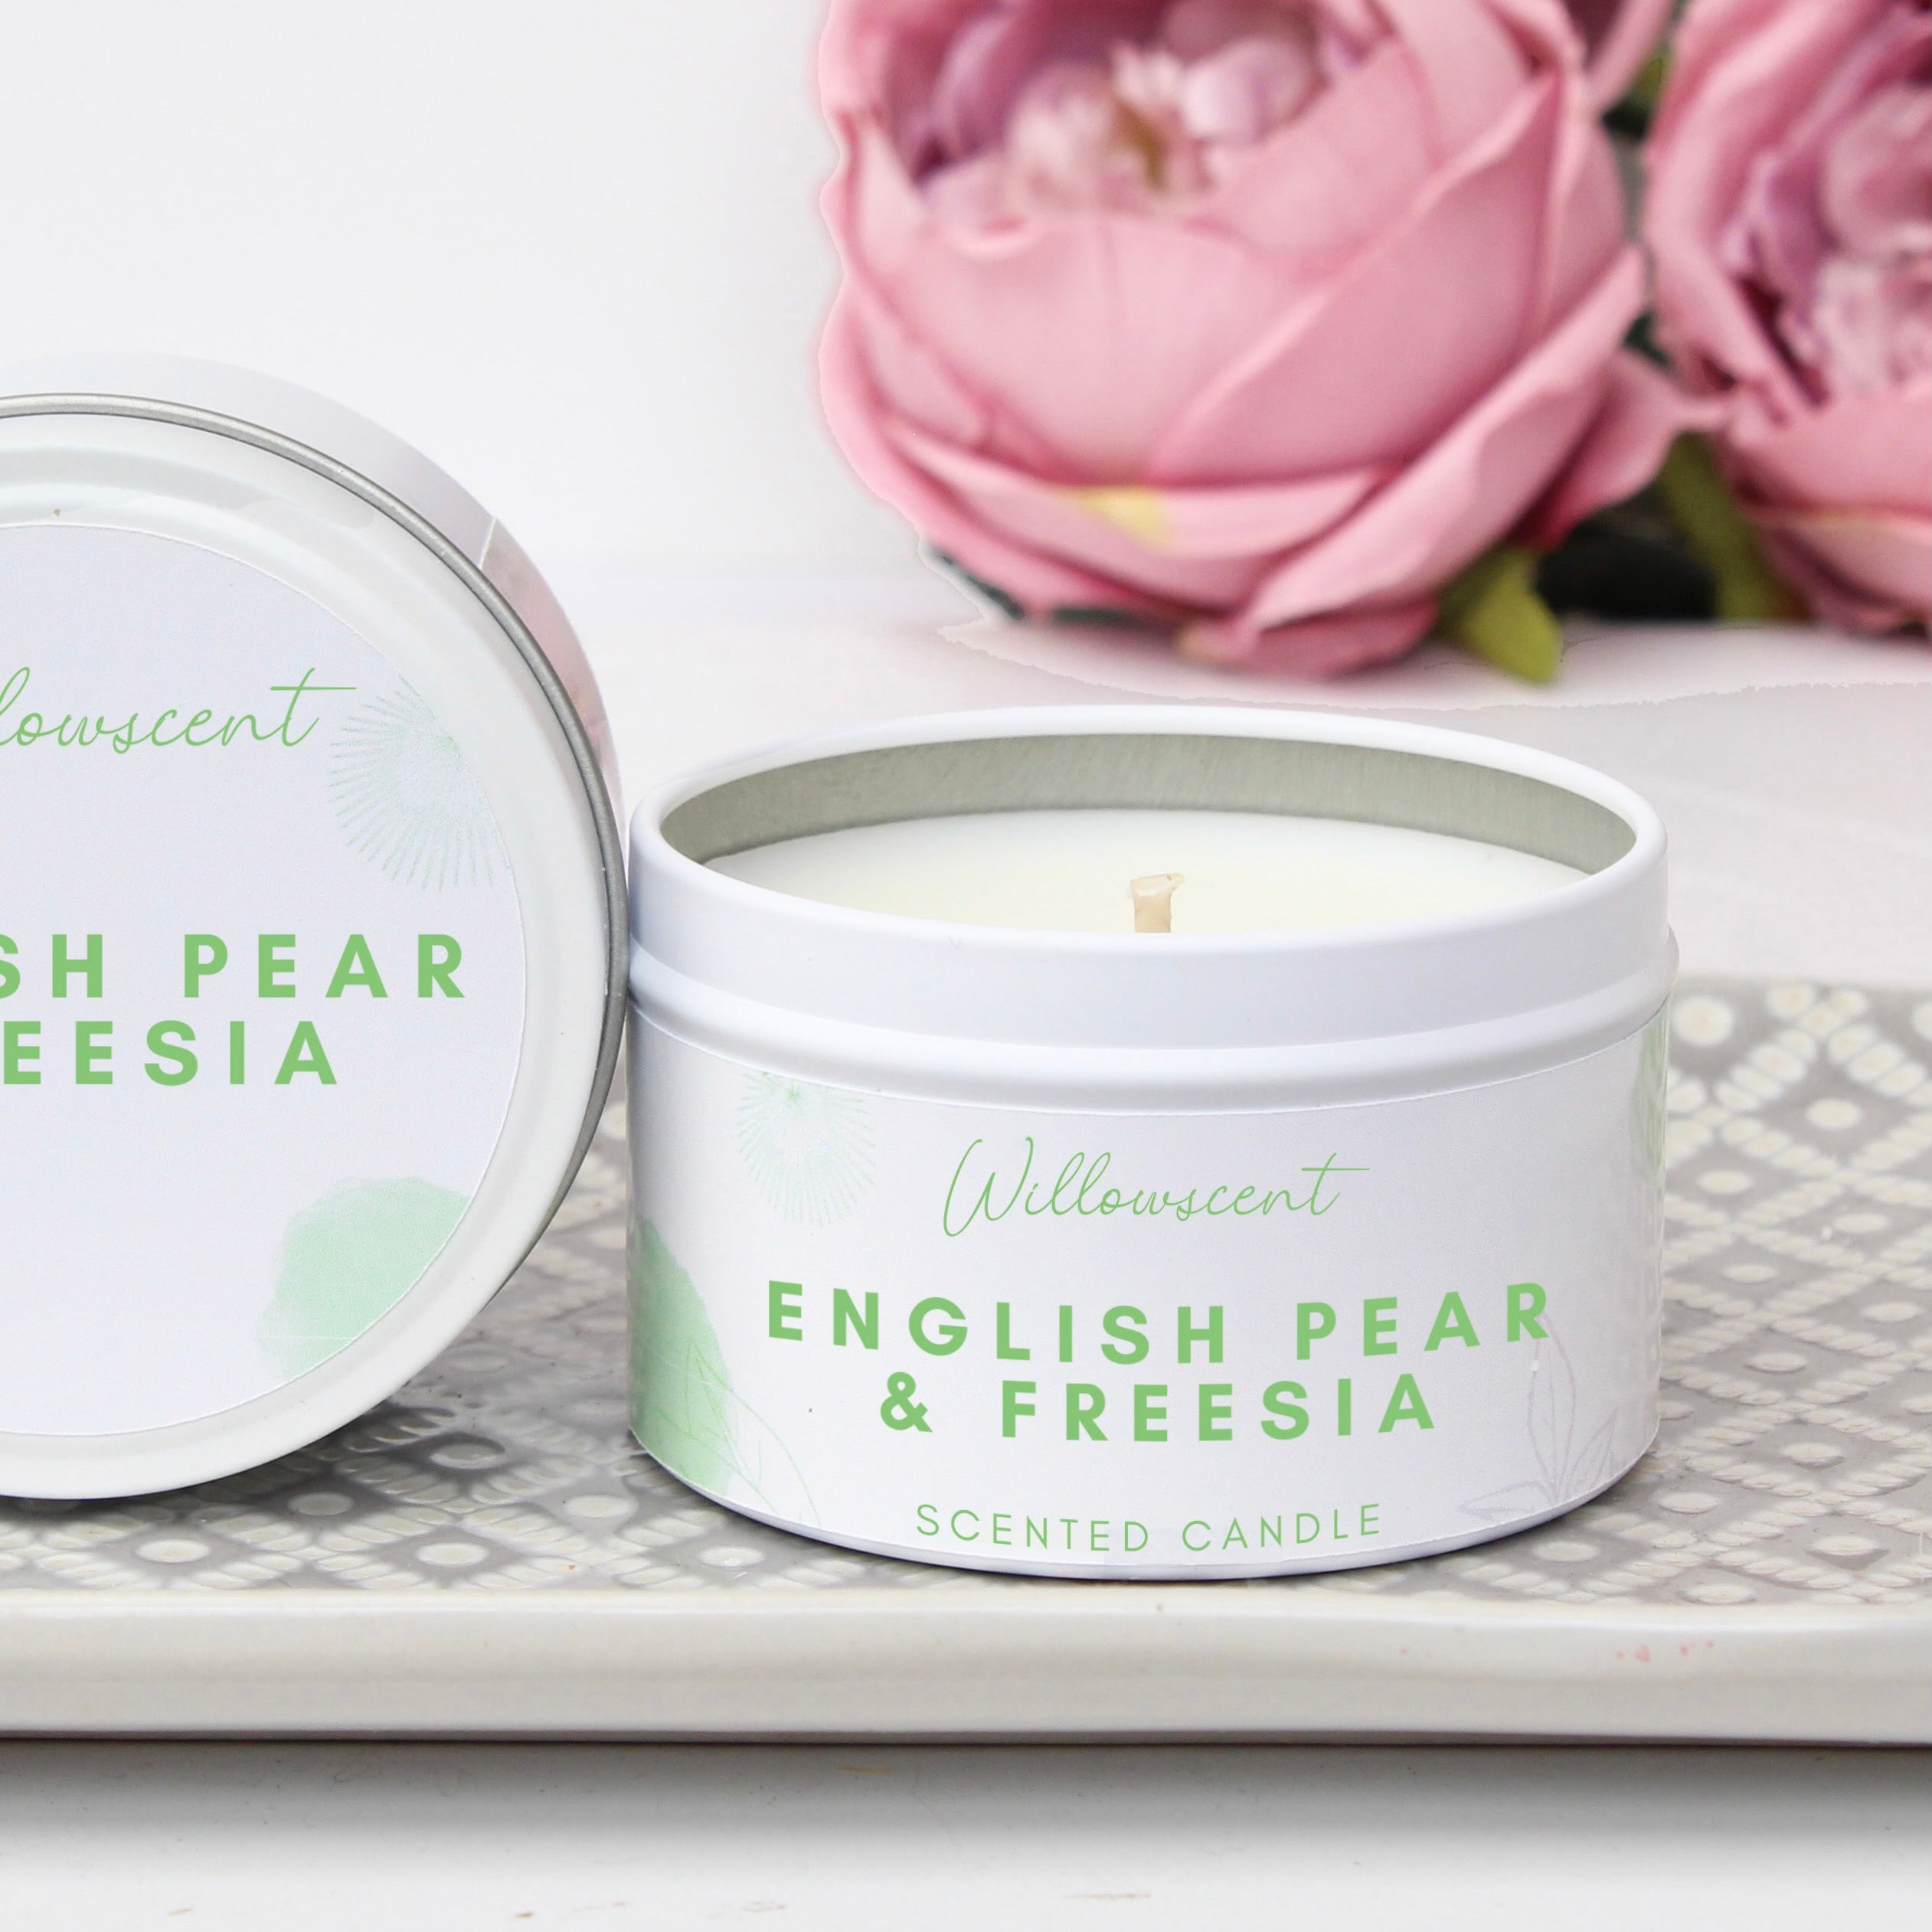 English Pear & Freesia Scented Candle